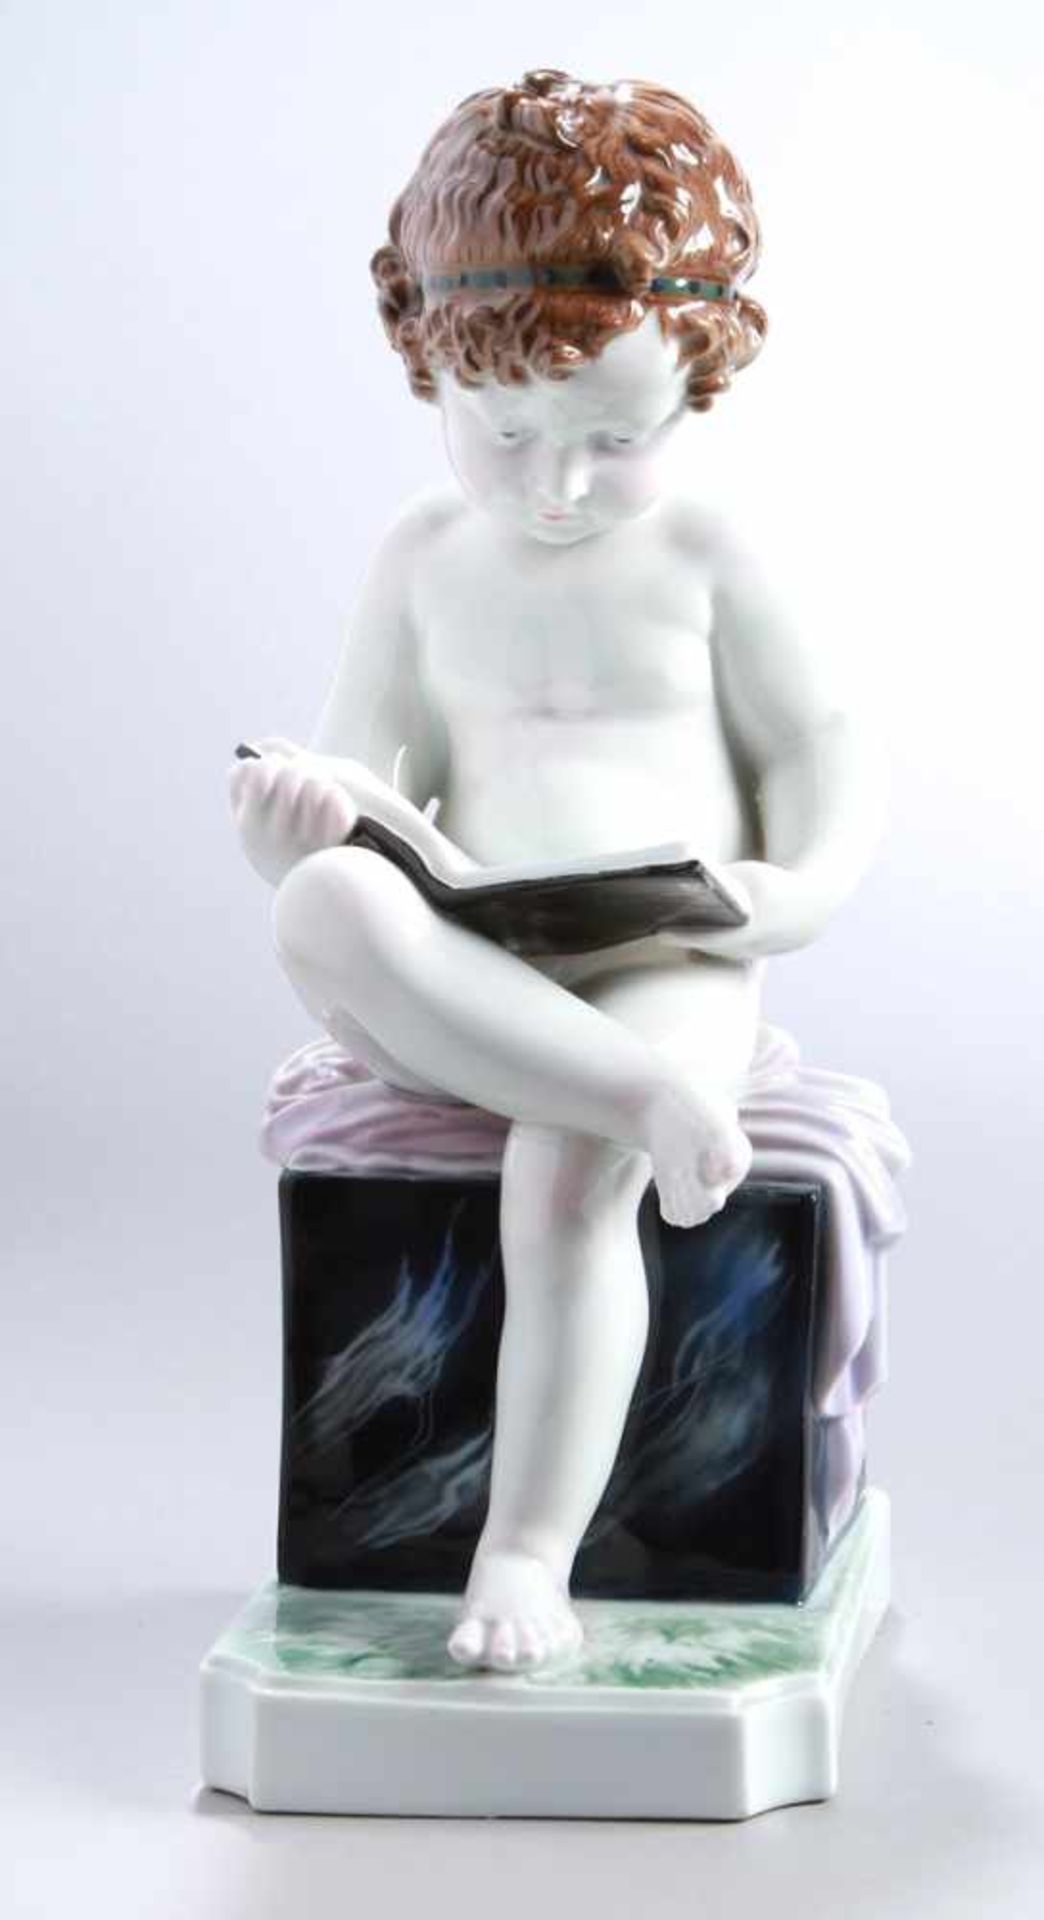 Porzellan-Figur, "Nacktes Kind beim Lesen", Karl Ens, Volkstedt., um 1930, Mod.nr.: 2967,auf